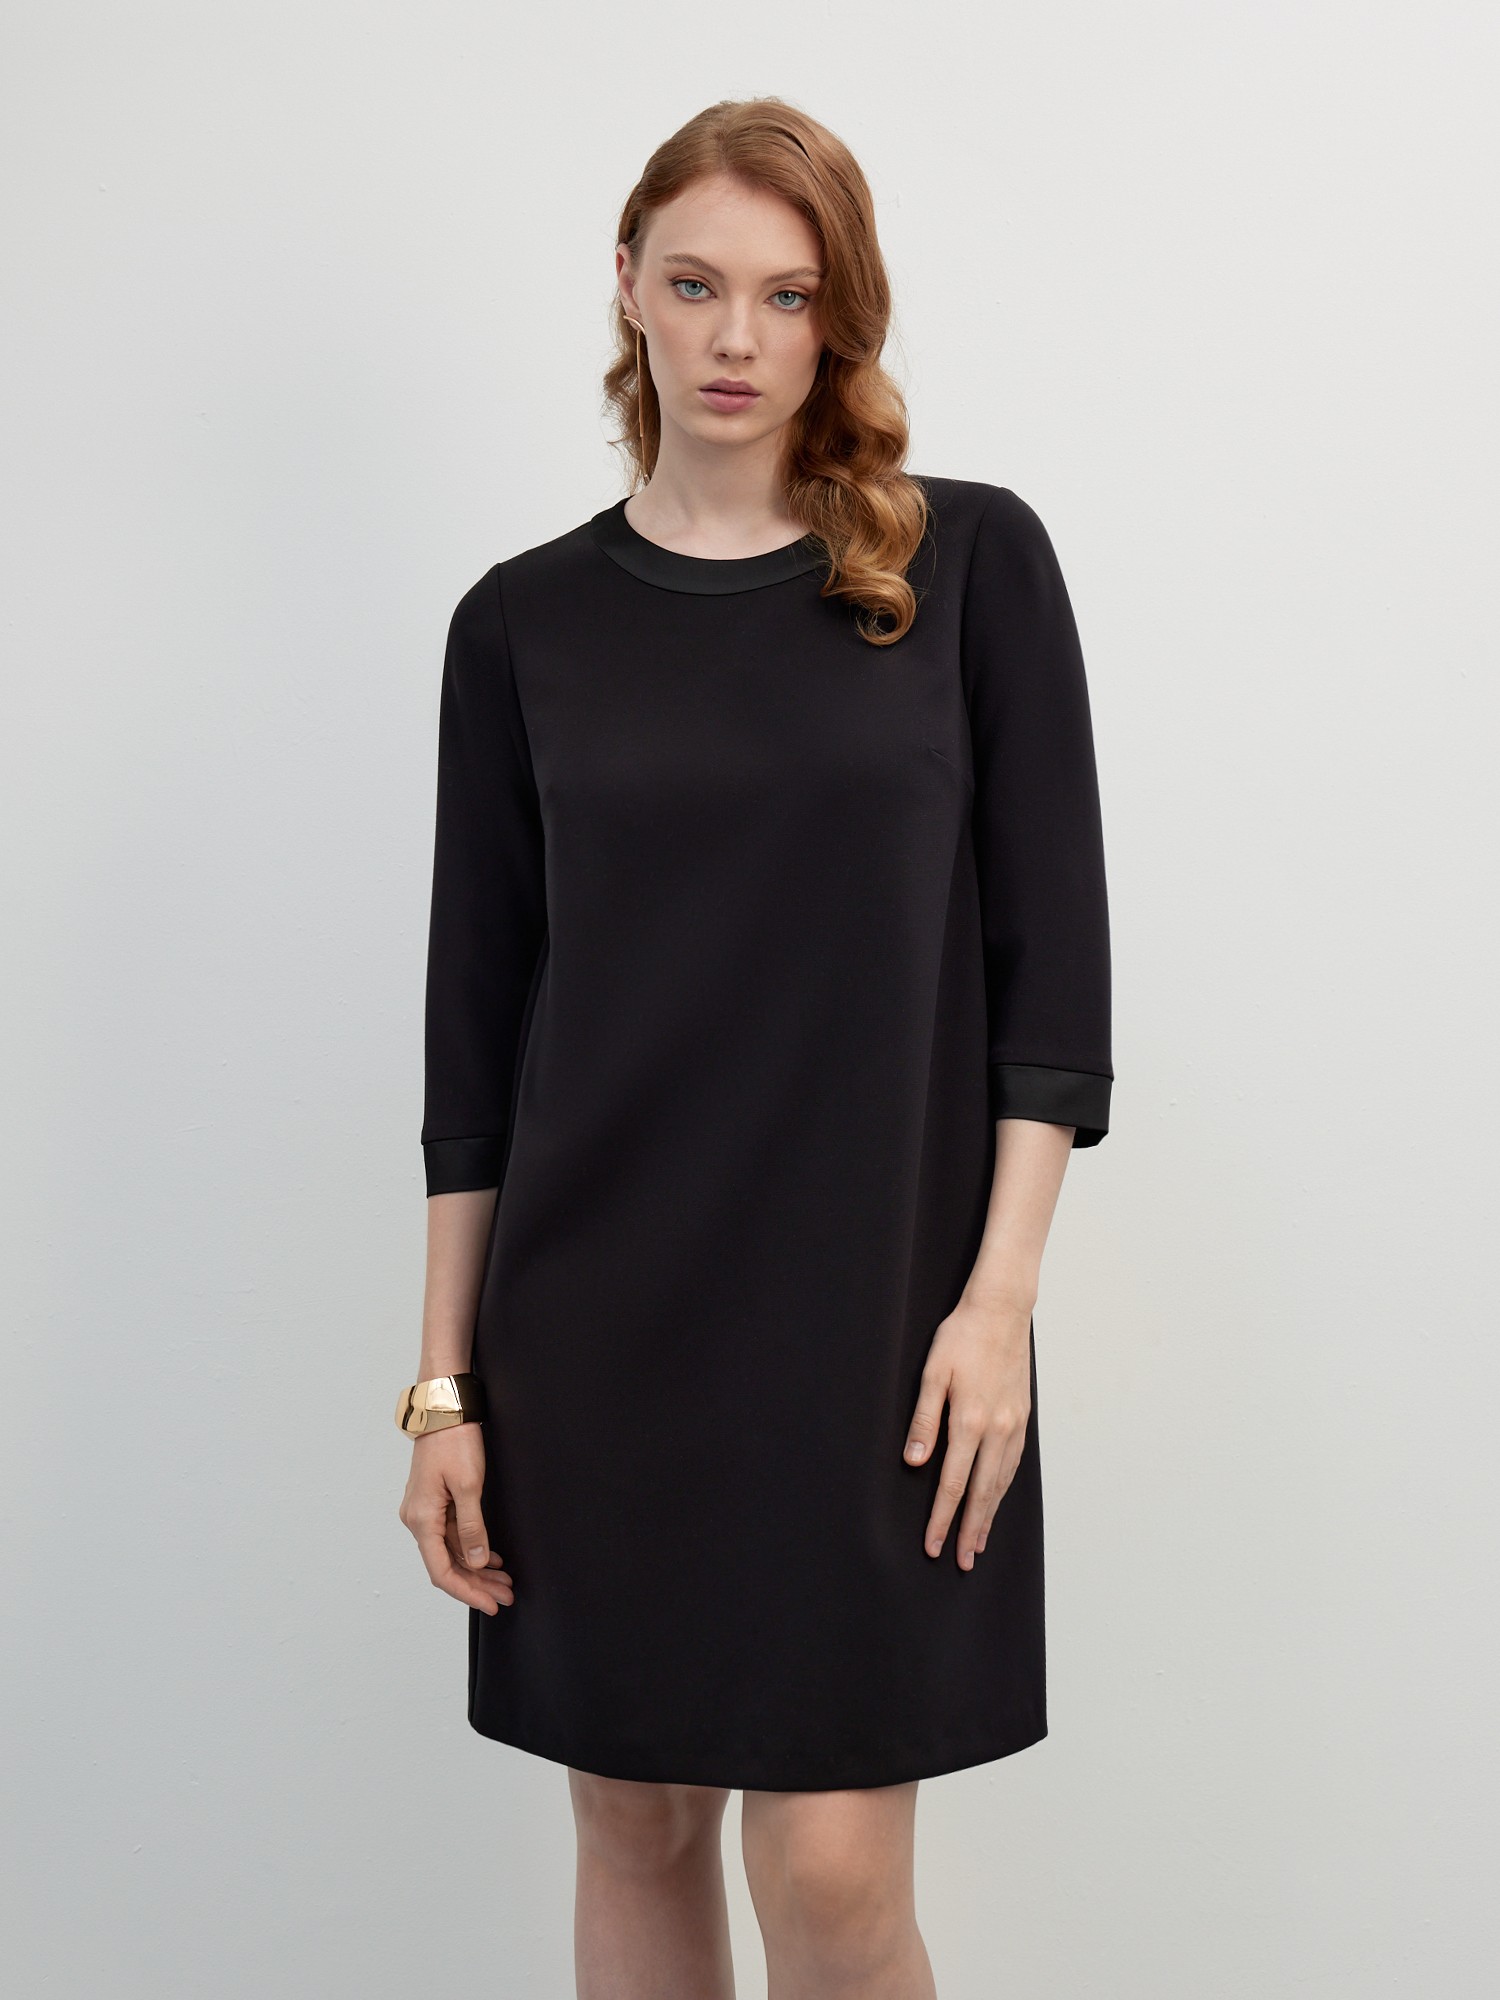 Платье из поливискозы LALIS DR0661, цвет черный, размер 48 - фото 1